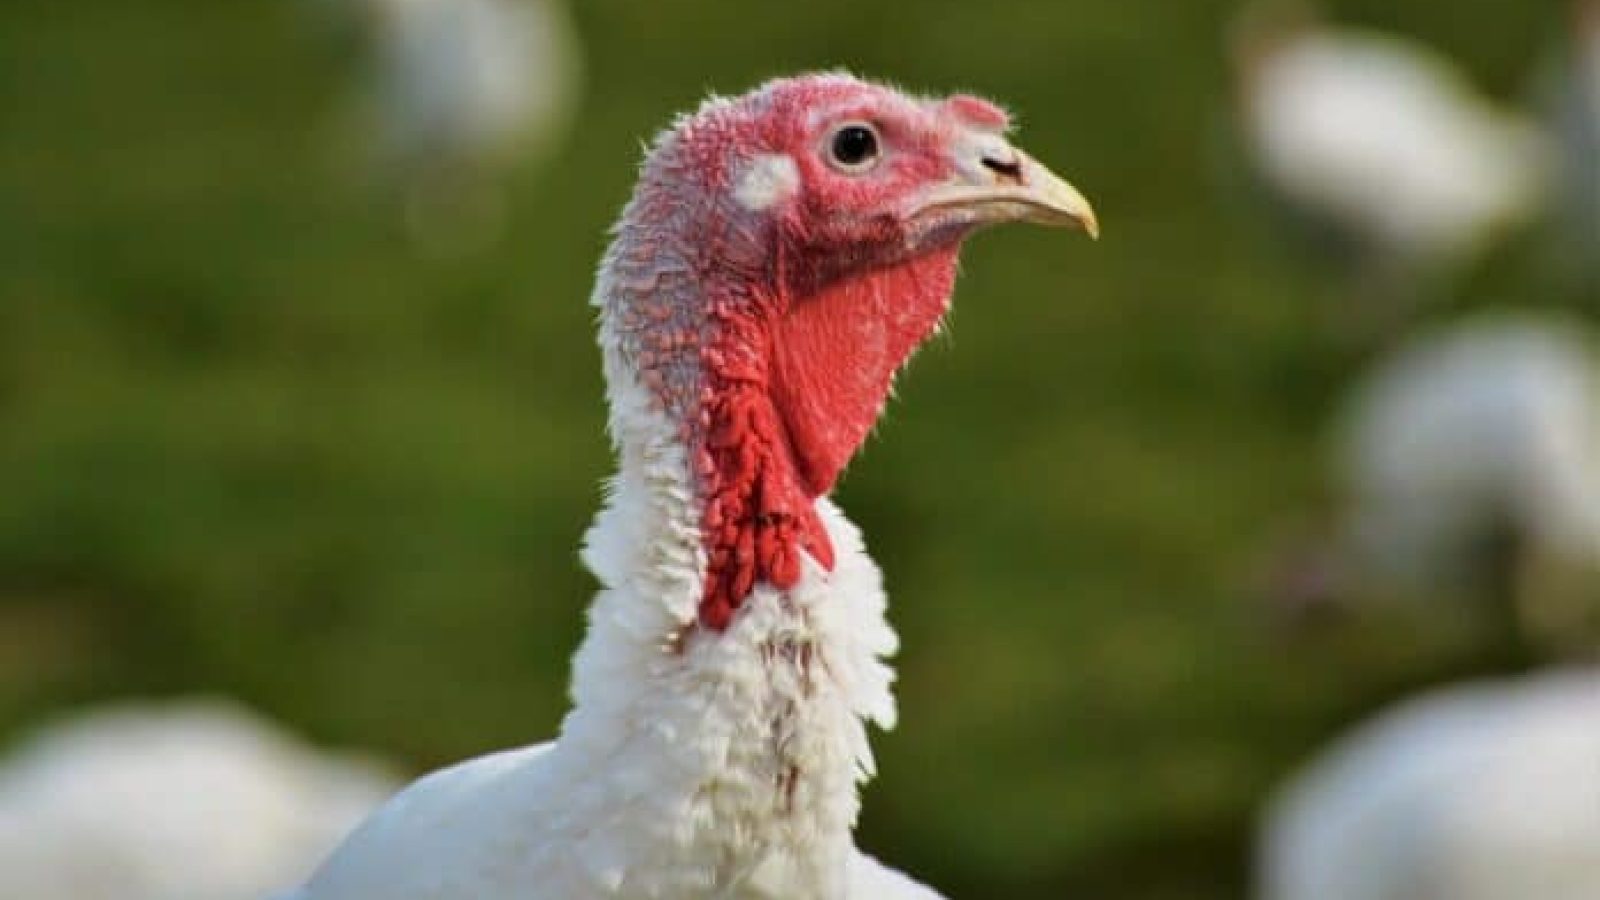 Avian flu in poultry